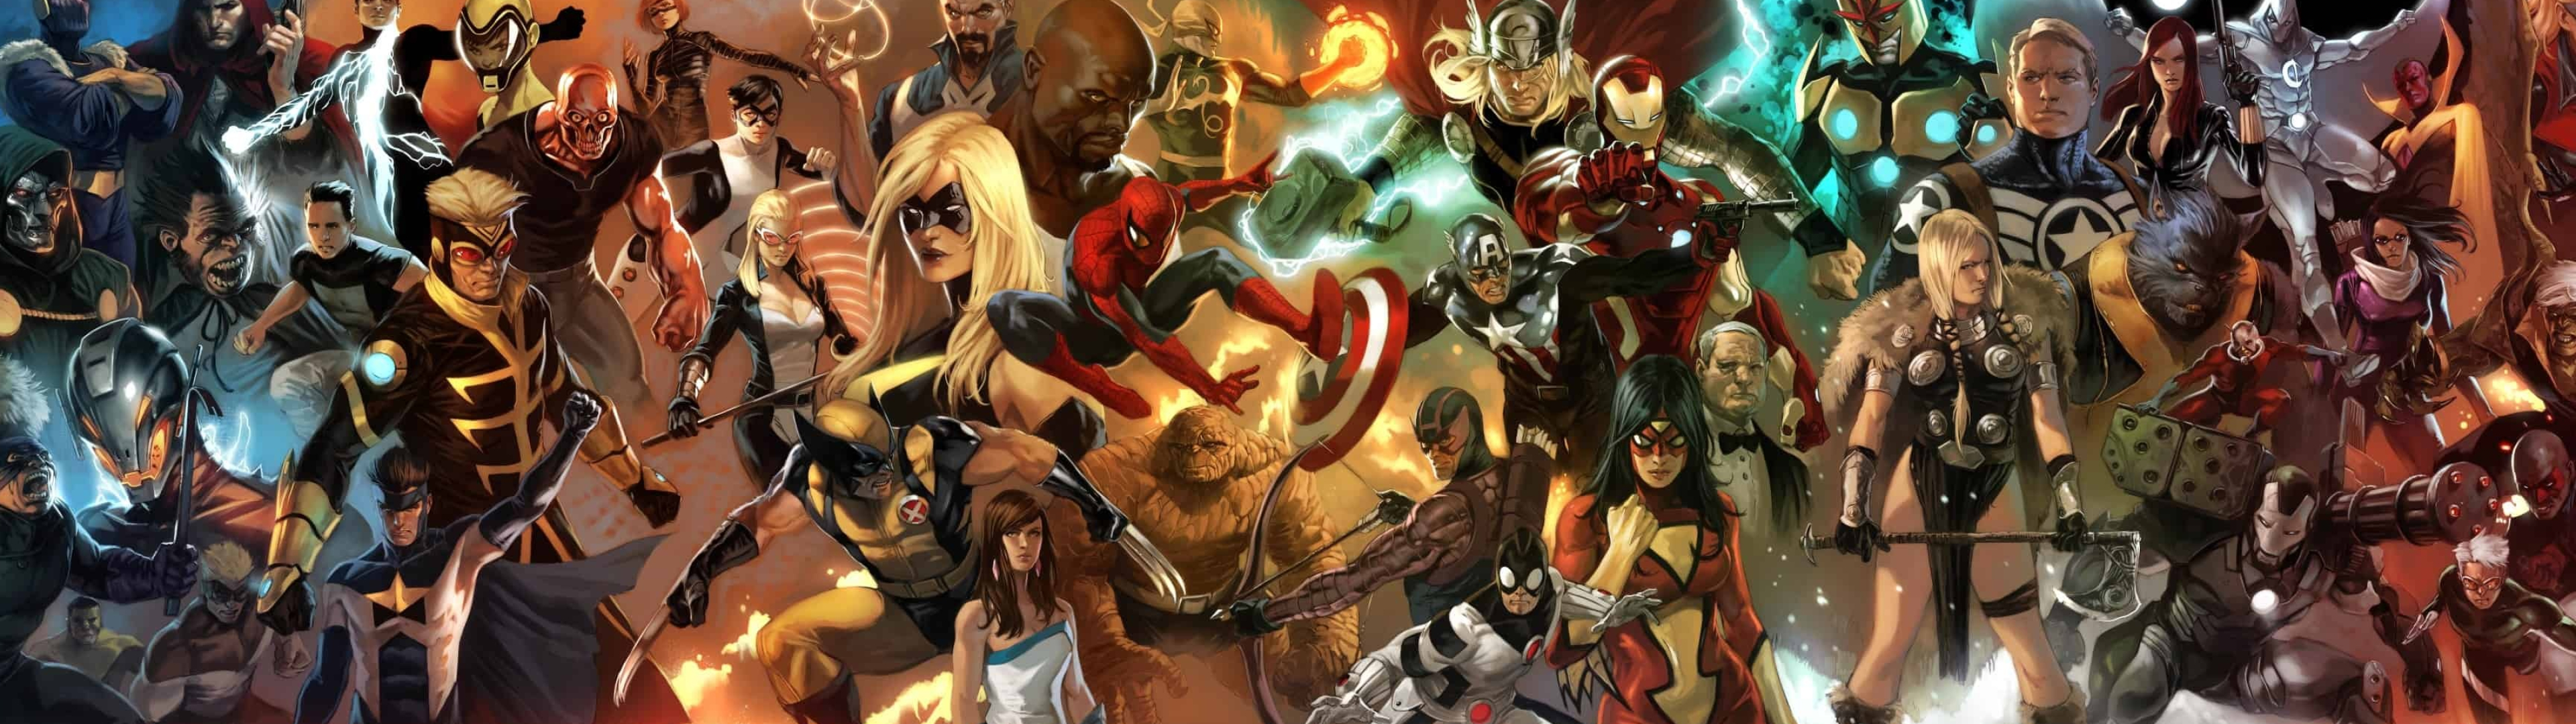 Marvel Comics, Characters, 3840x1080 Dual Screen Desktop